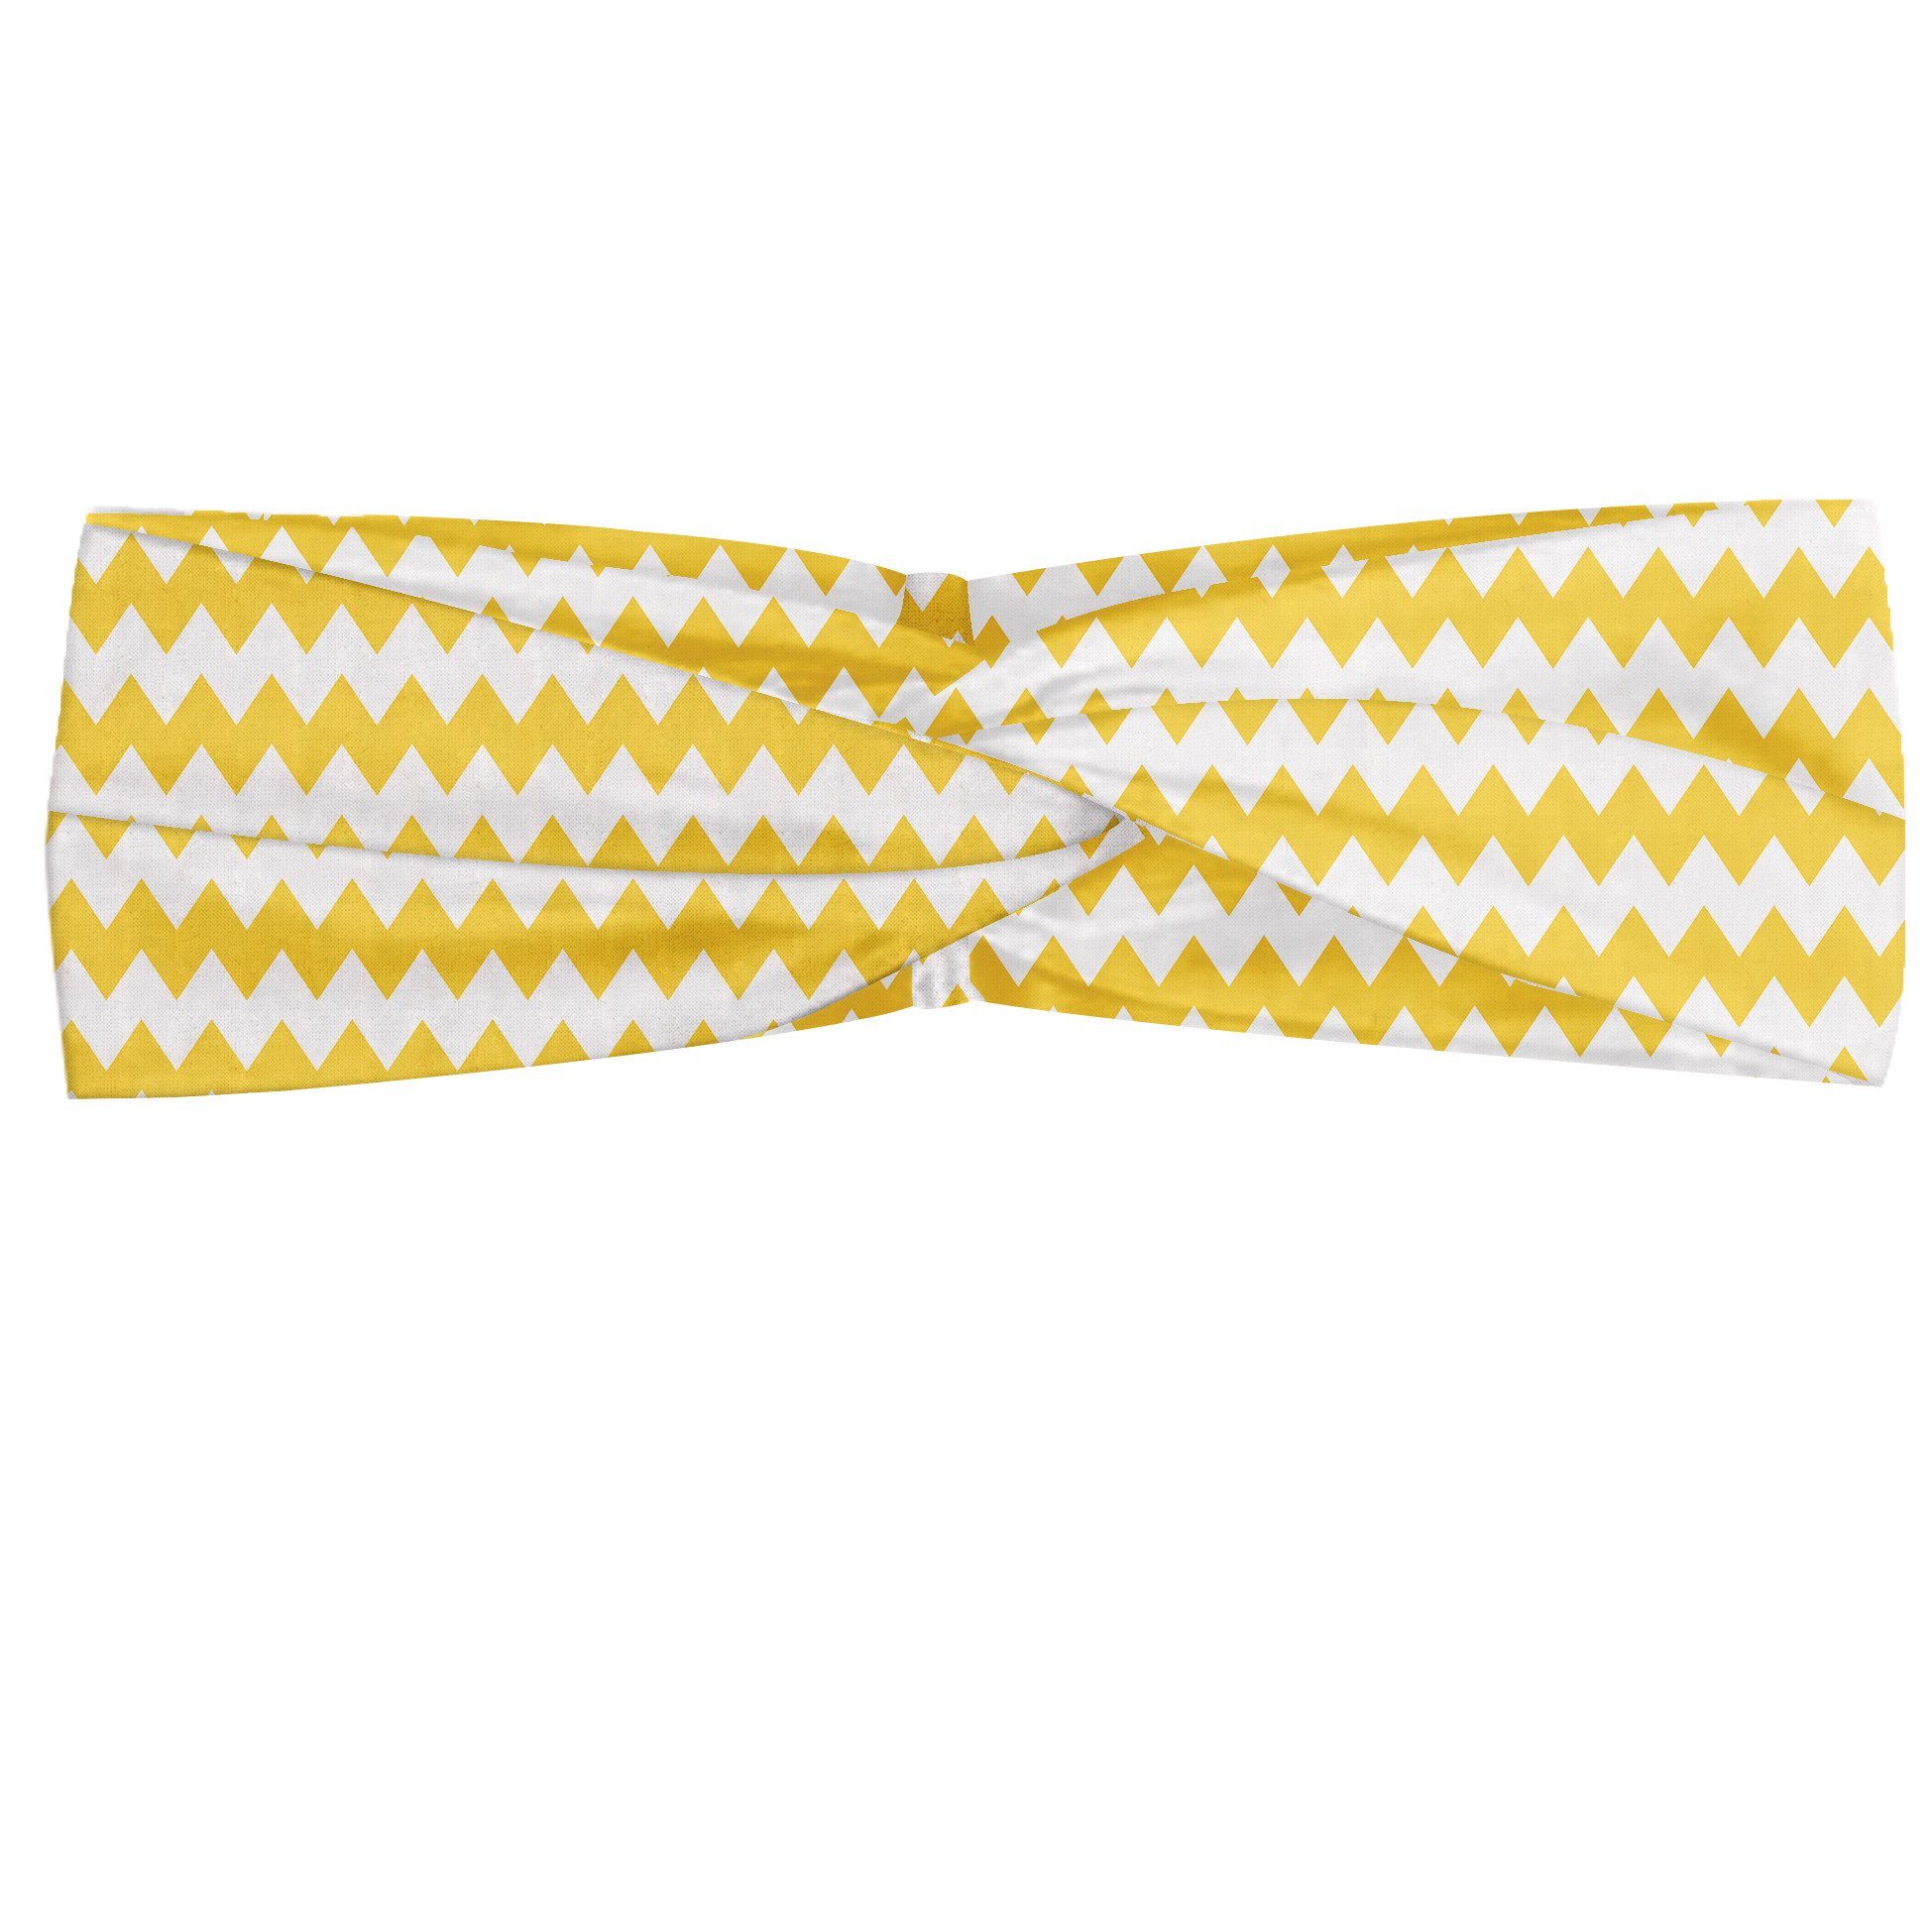 Abakuhaus Stirnband Elastisch und Angenehme alltags accessories Yellow Chevron Old Sharp Motiv